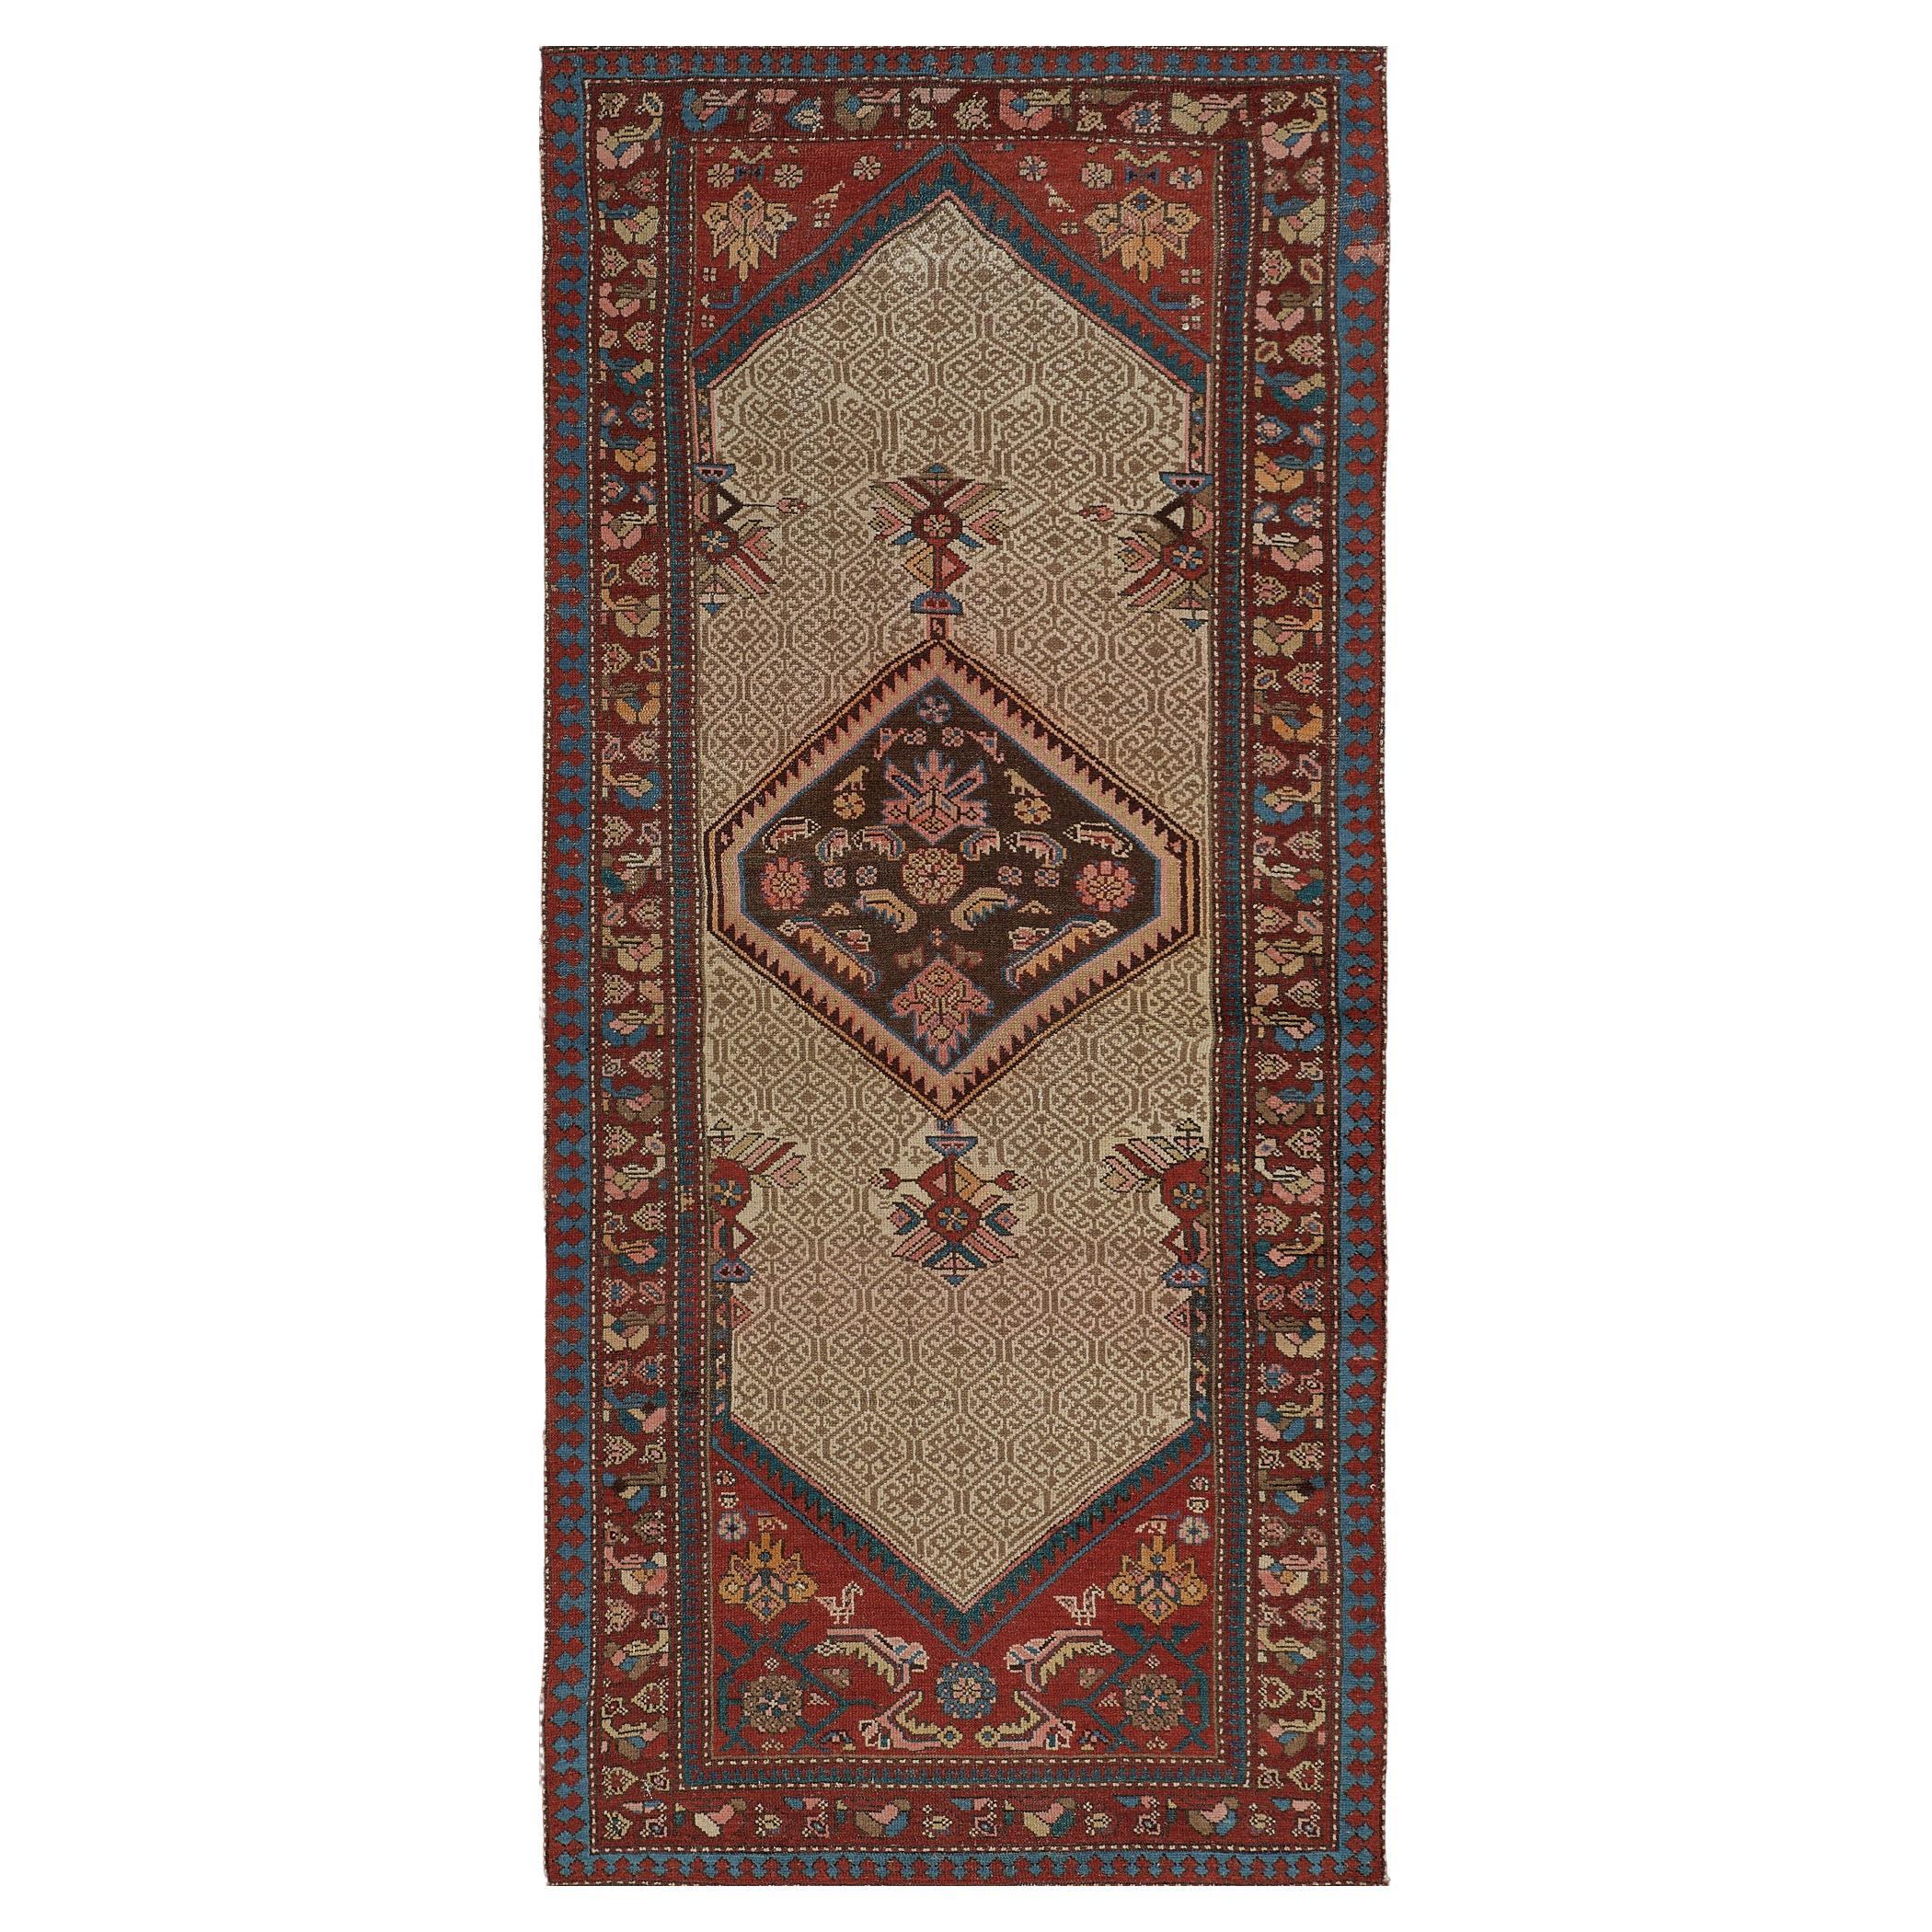 Antique Chemin de table traditionnel en laine persane de couleur camel-brown 